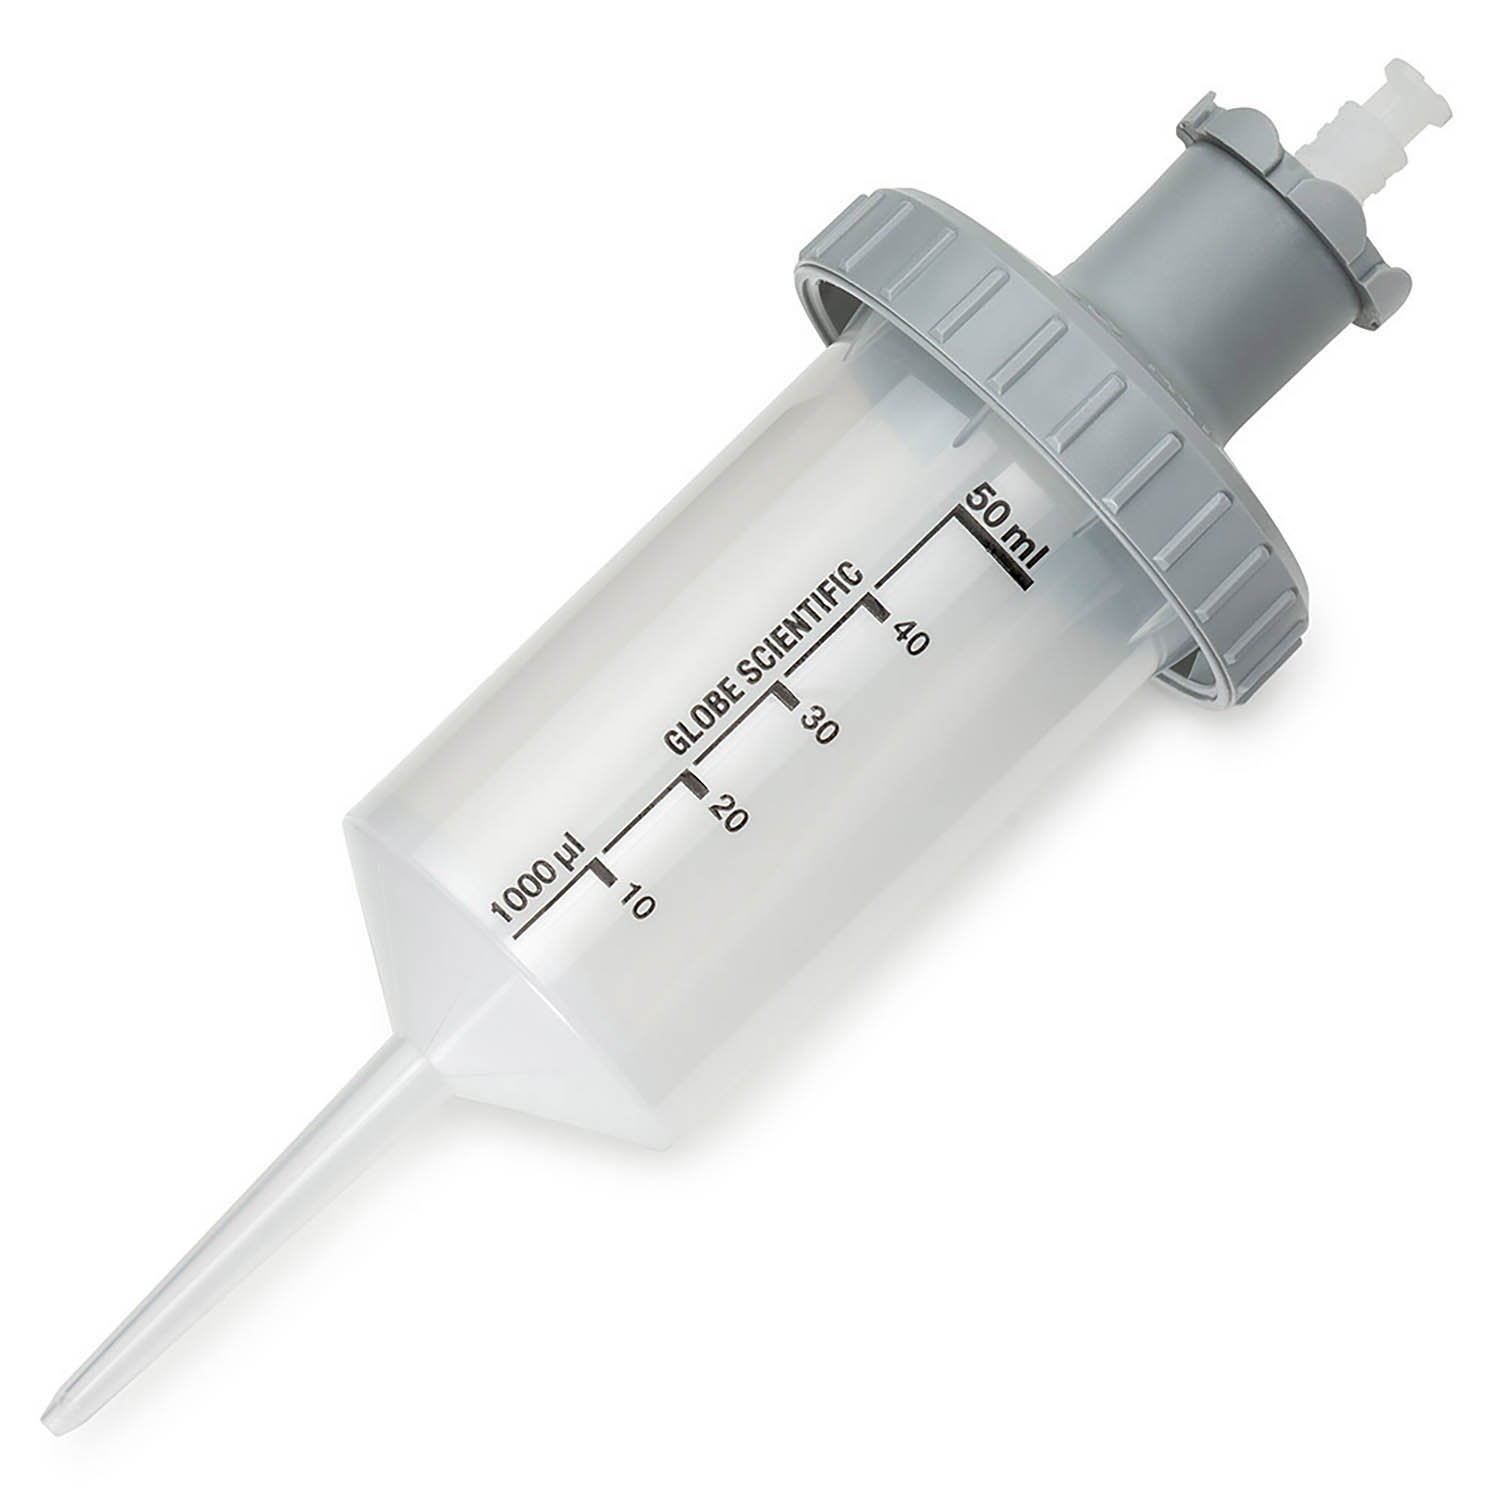 RV-Pette PRO Dispenser Syringe Tip for Repeat Volume Pipettors - Sterile, 50mL, Box of 25